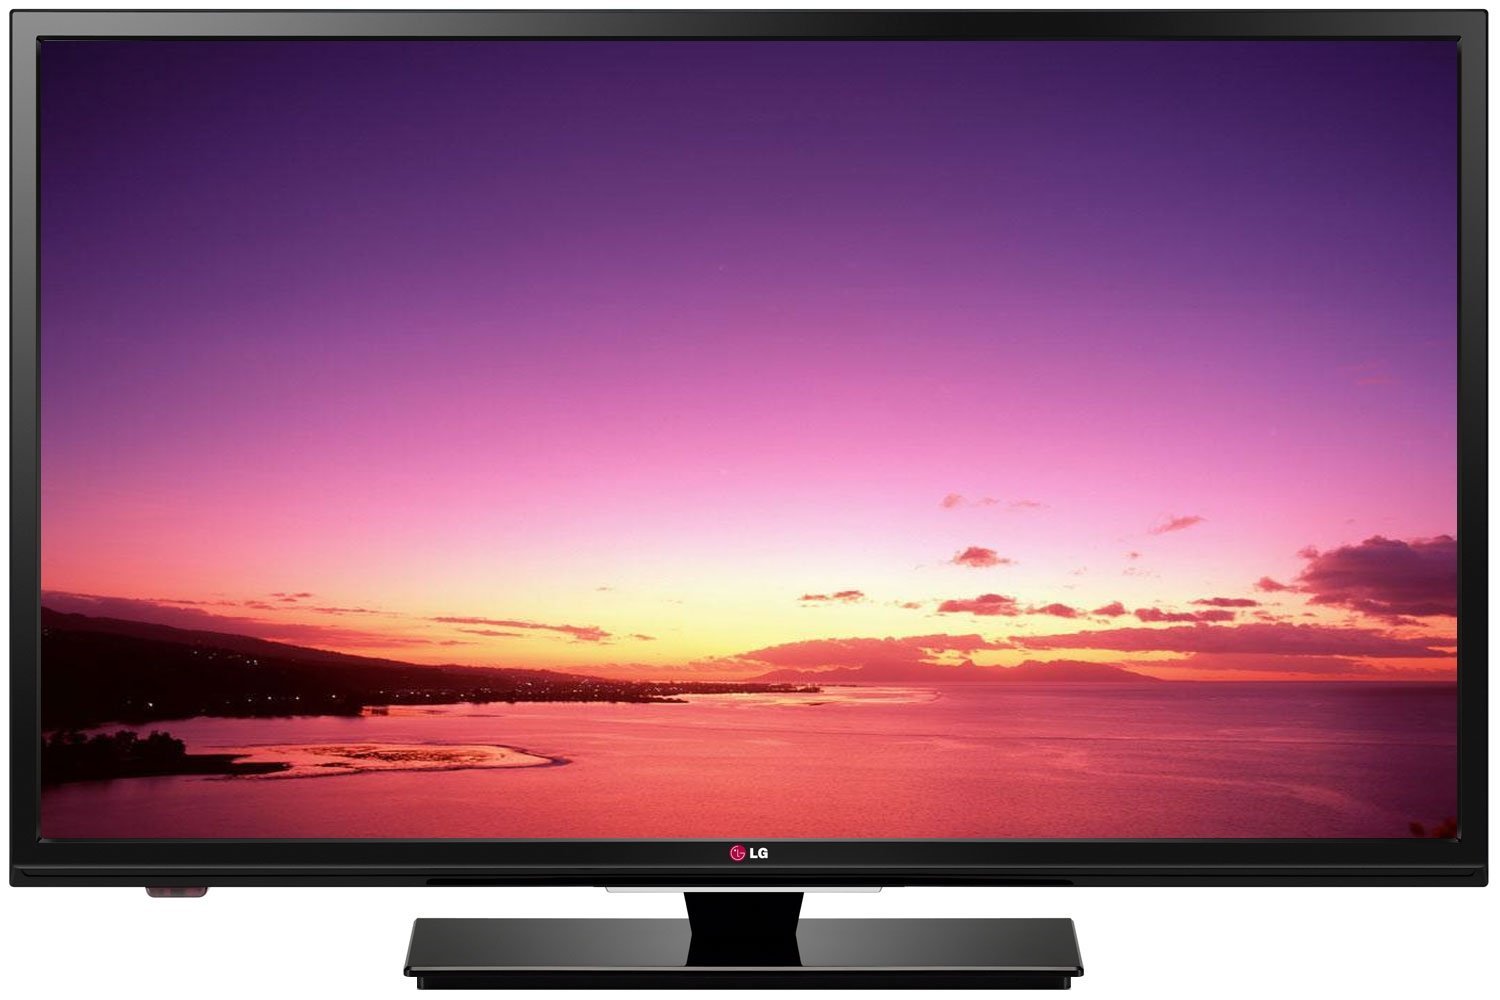 lg electronics 32lb520b 720p 60hz led tv